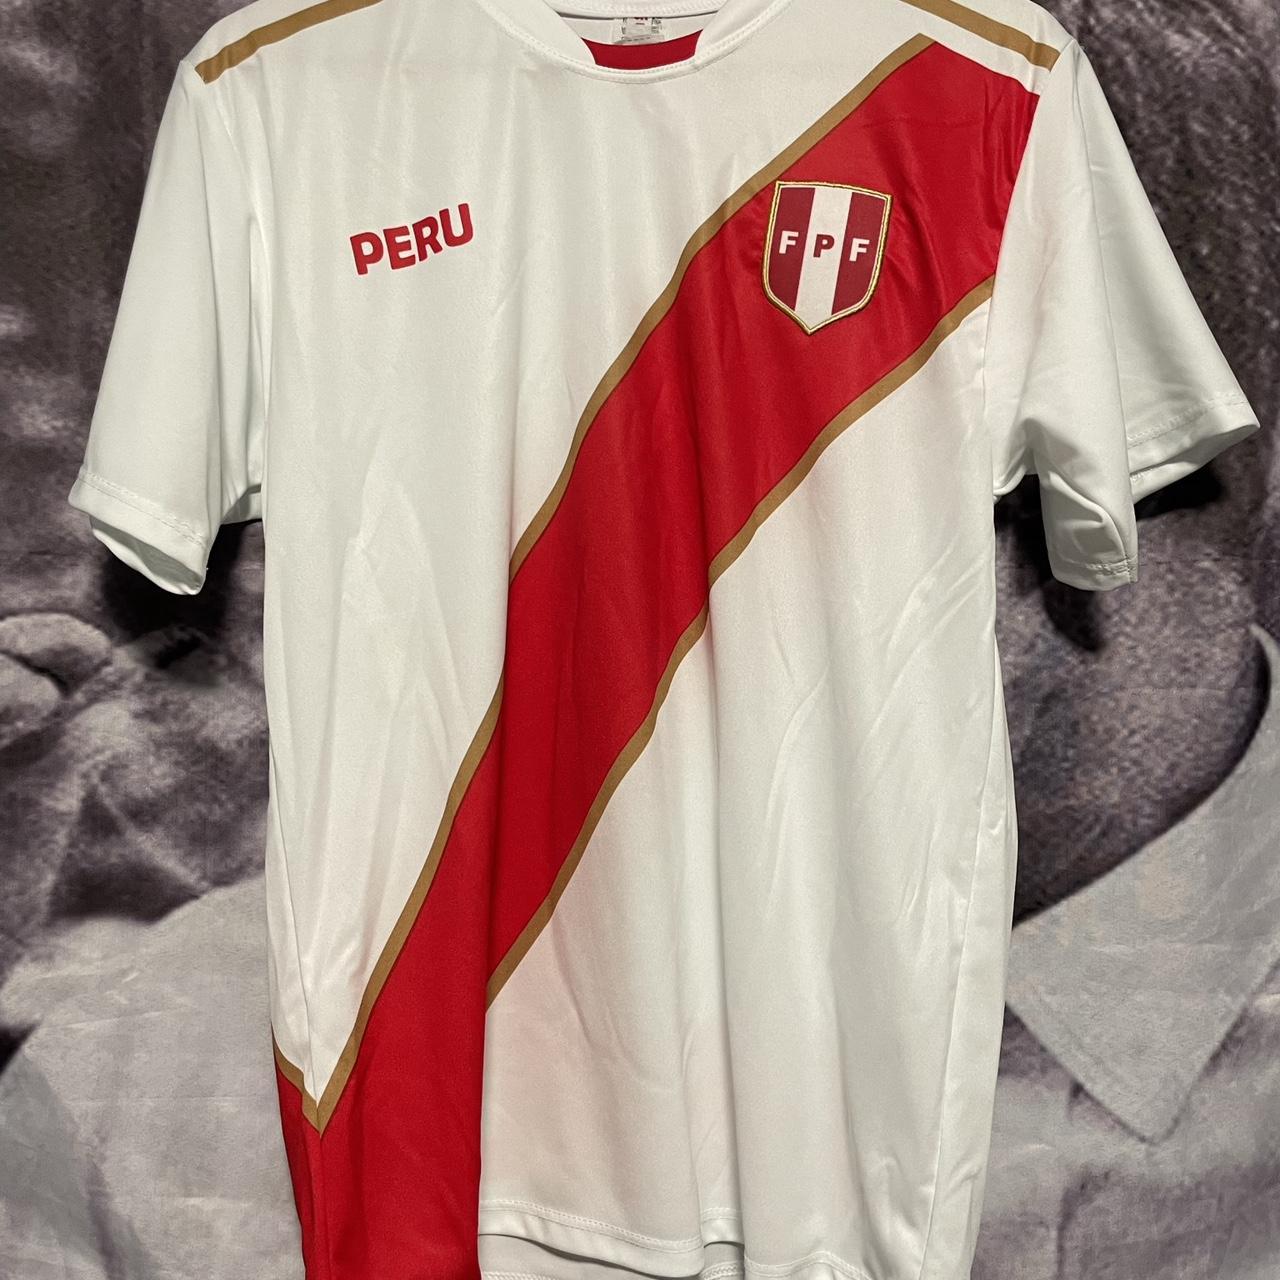 PERU FPF International Team Jersey Mexico BOOT - Depop